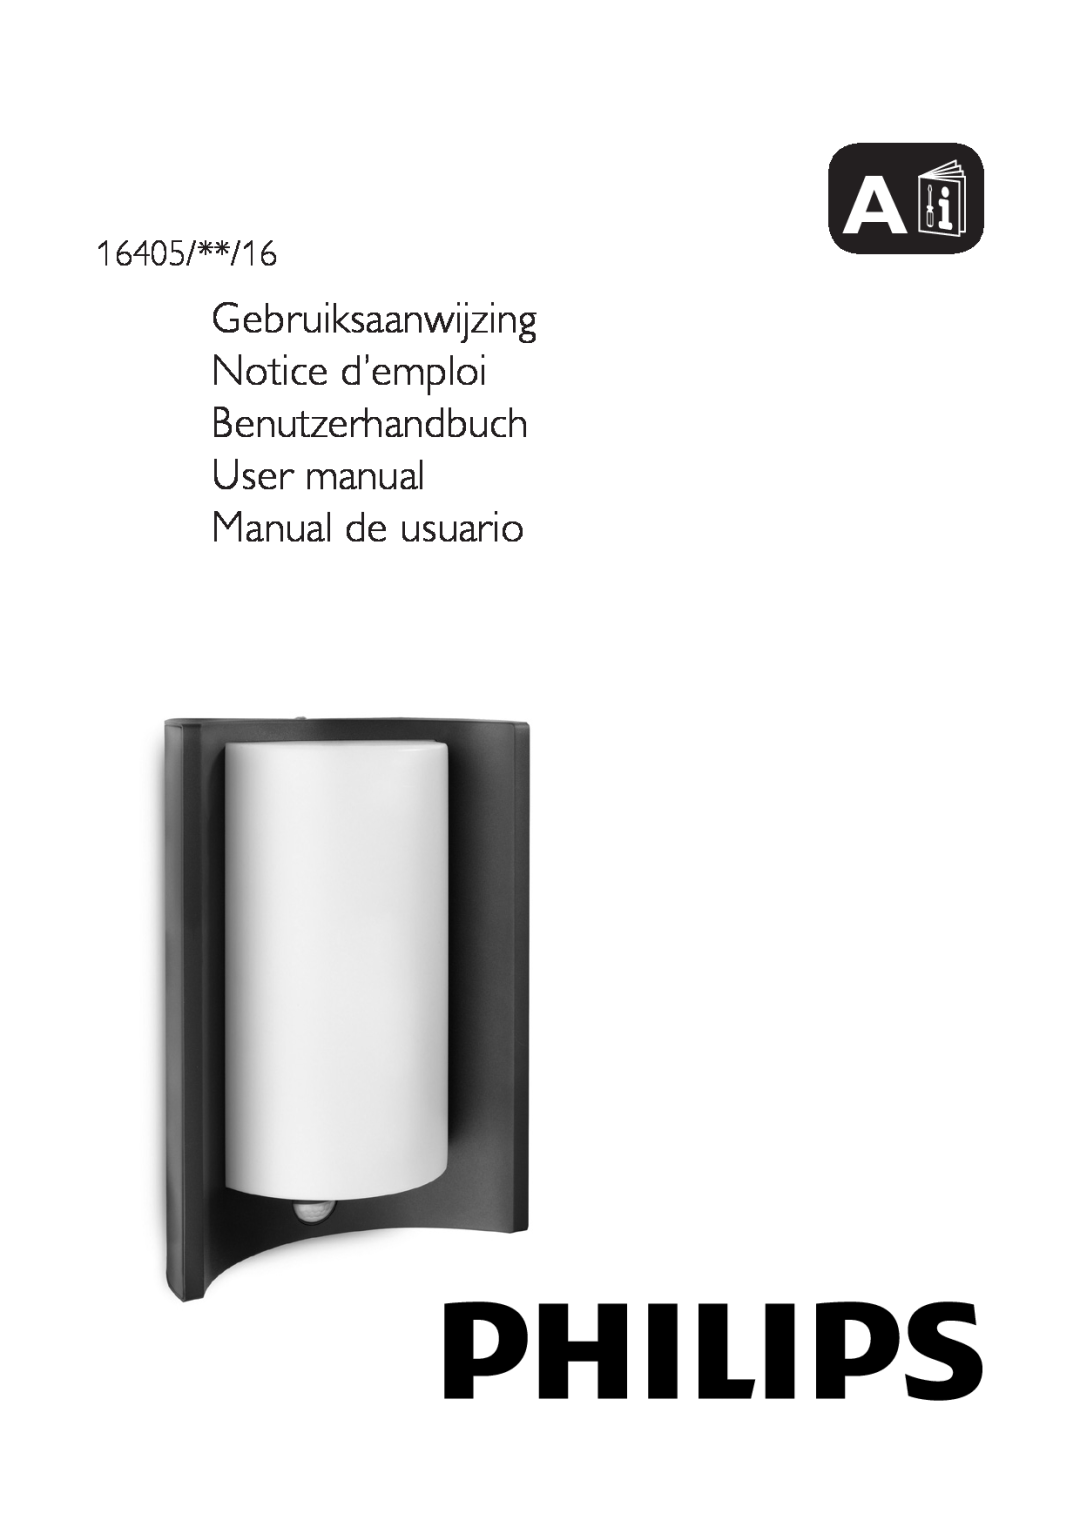 Philips user manual Gebruiksaanwijzing Notice d’emploi, 16405/**/16 